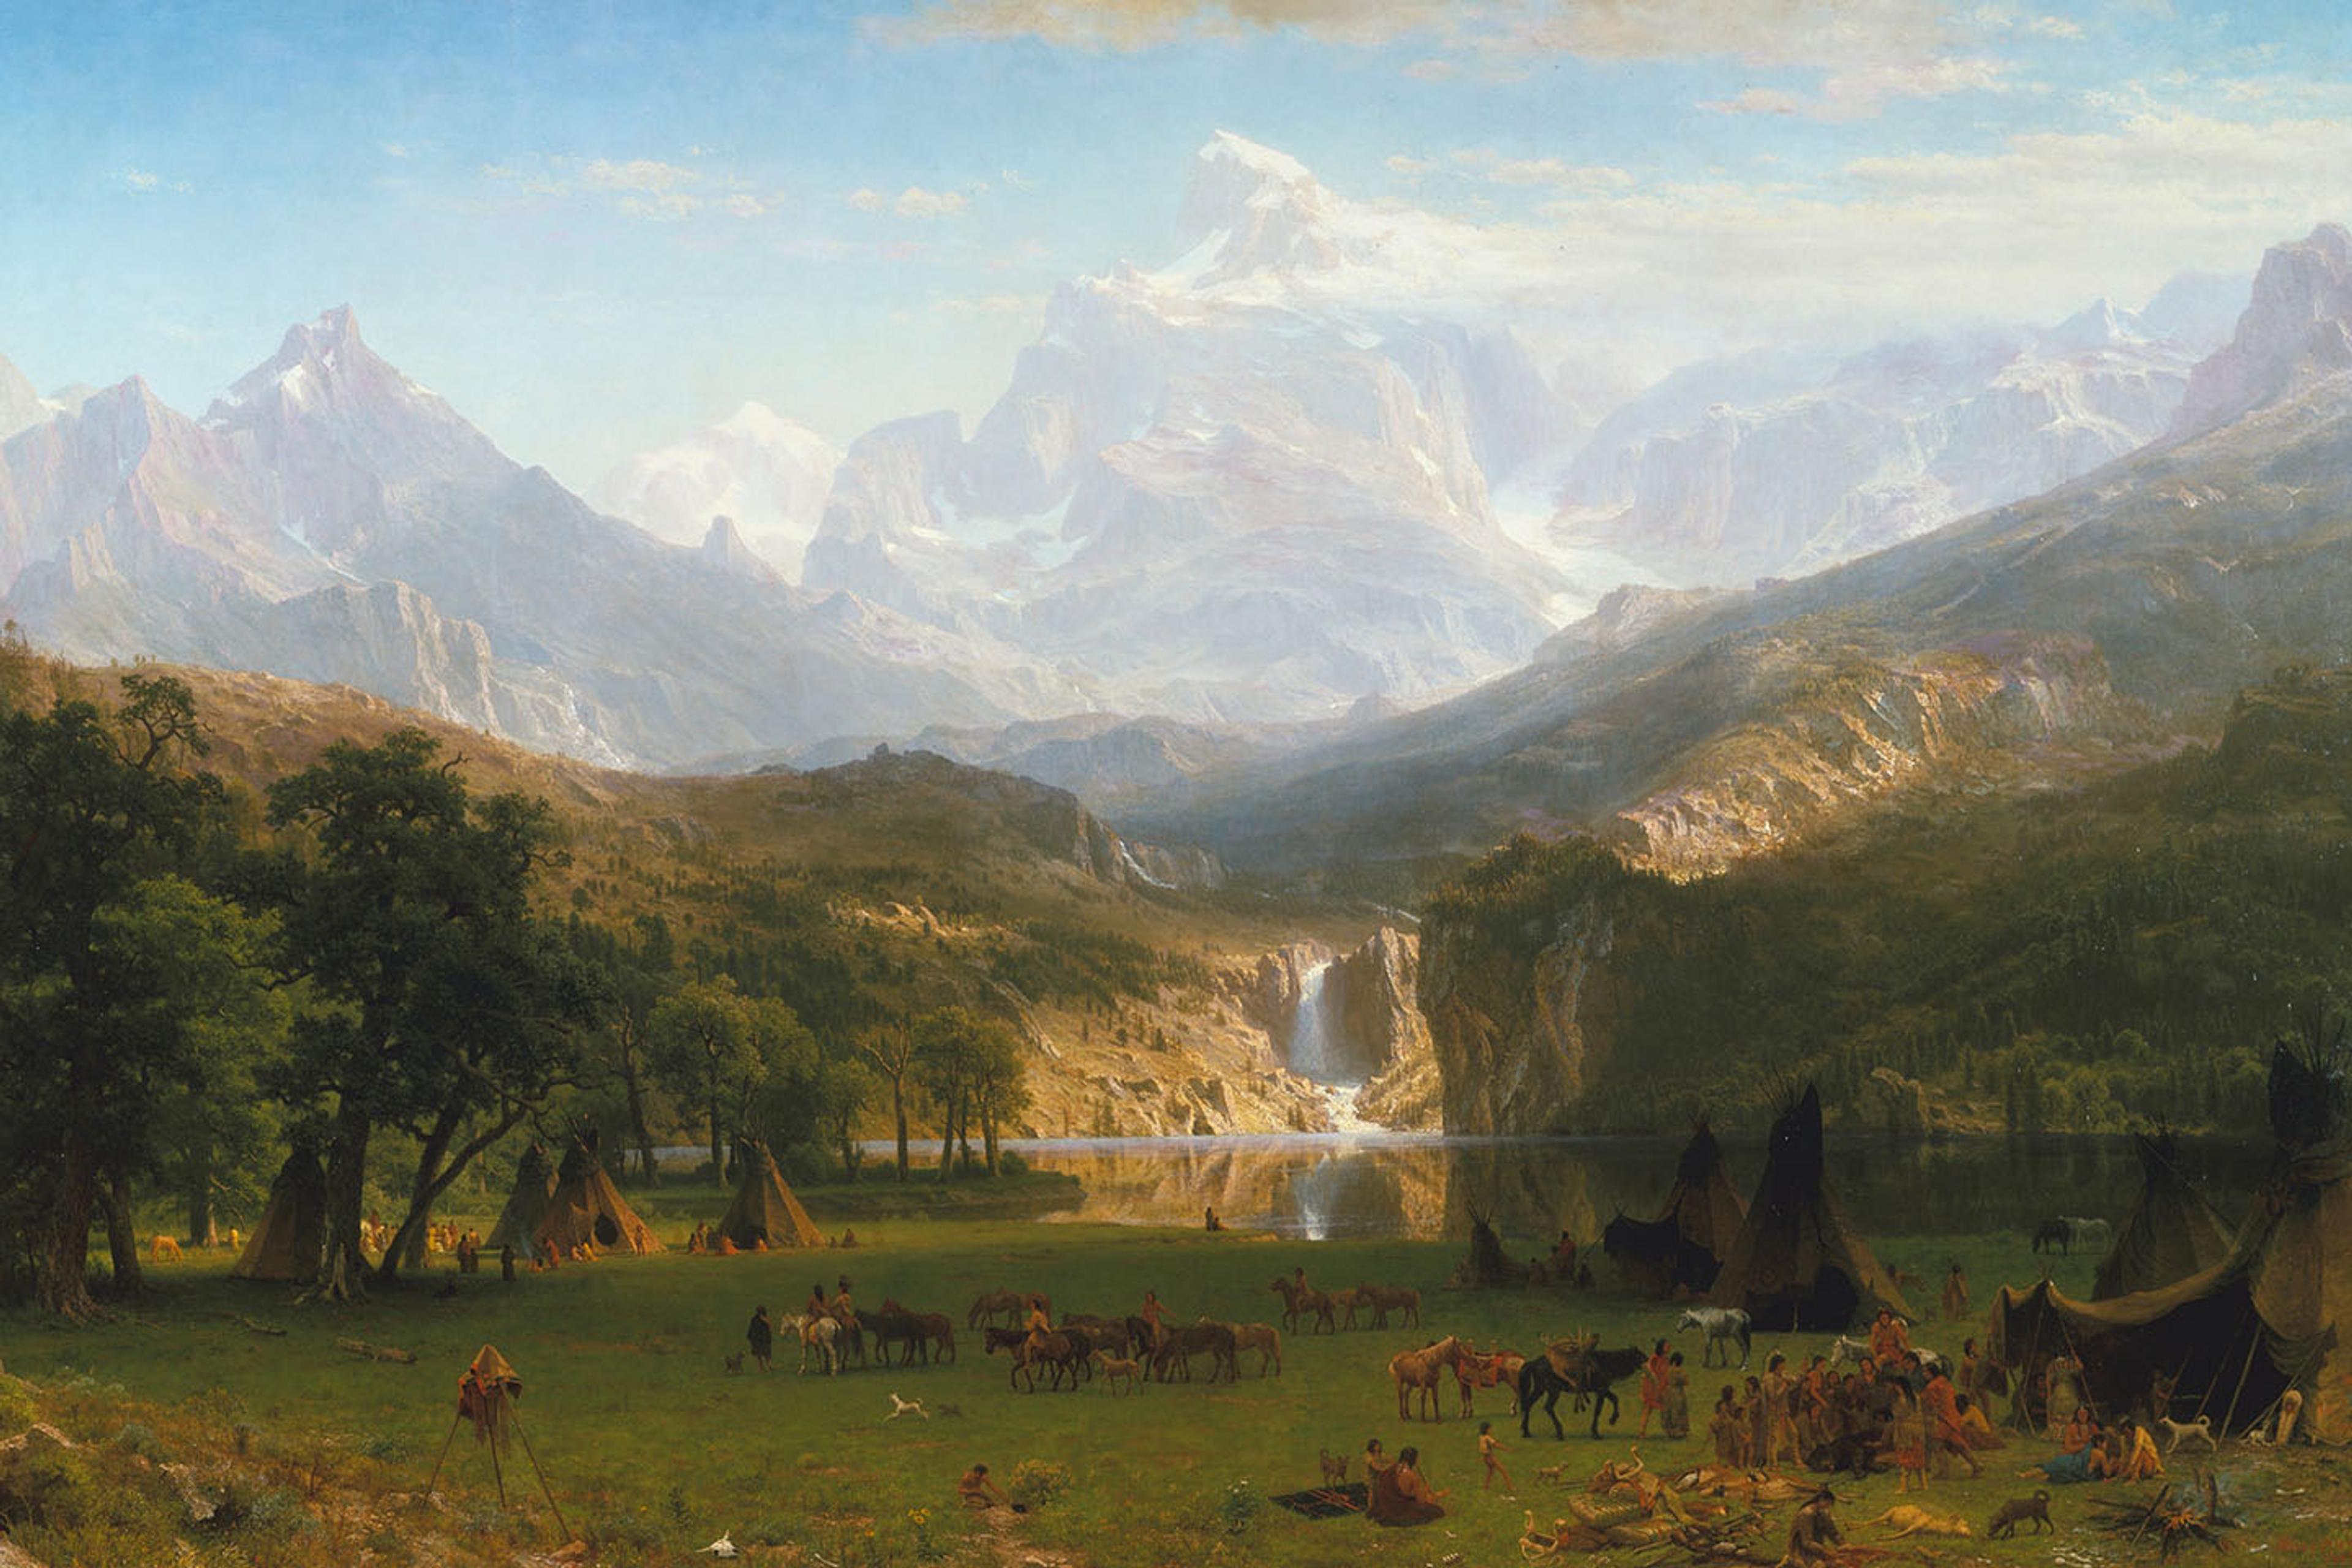 Albert Bierstadt's "The Rocky Mountains, Lander's Peak"